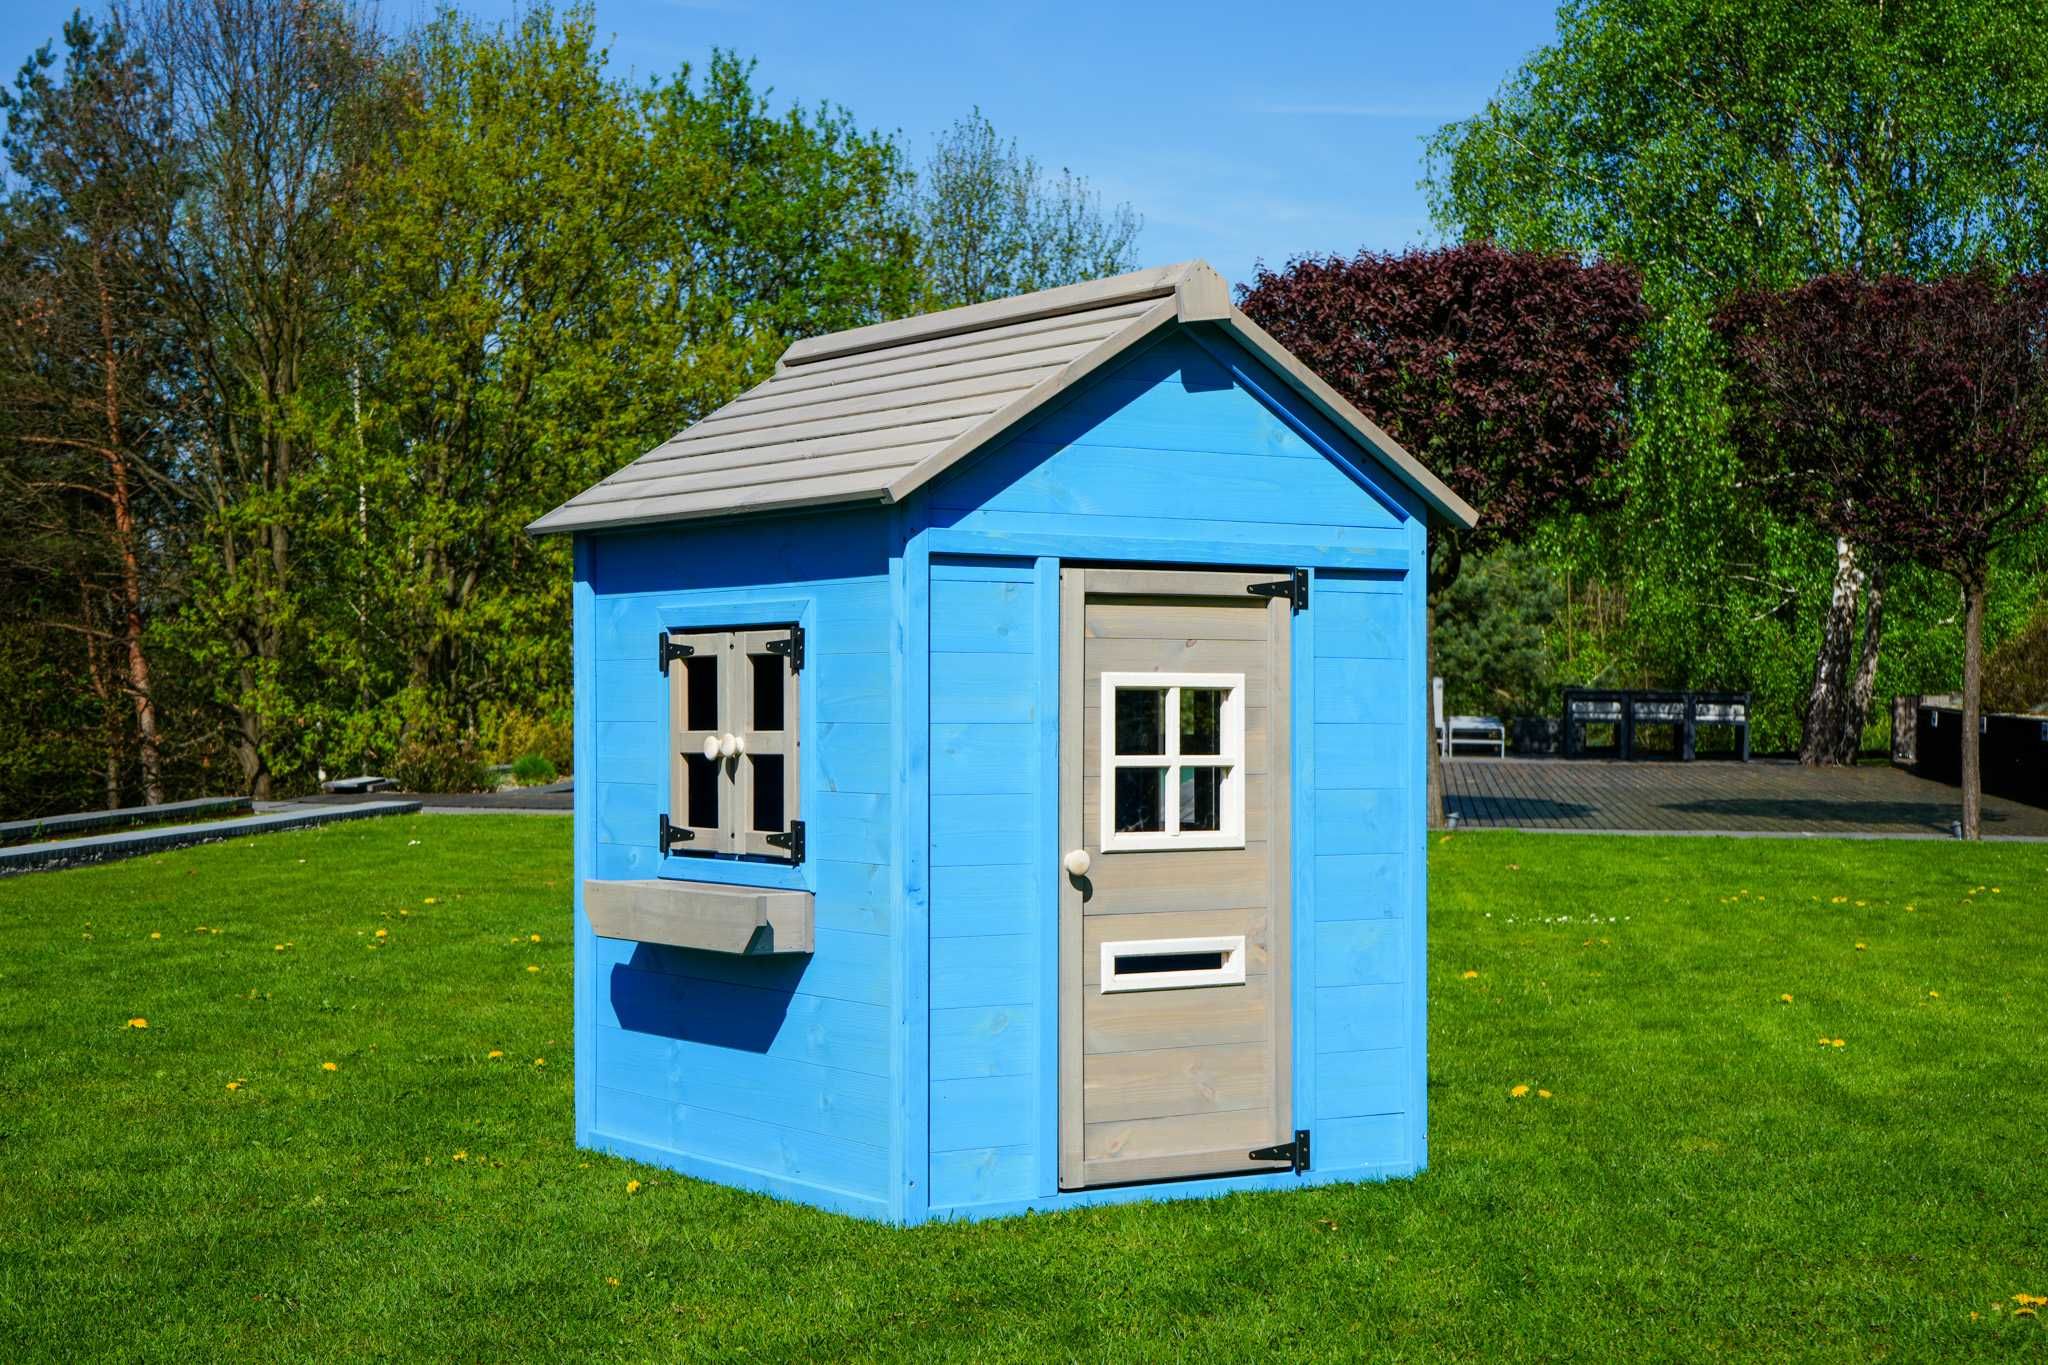 Drewniany niebieski domek ogrodowy dla dzieci